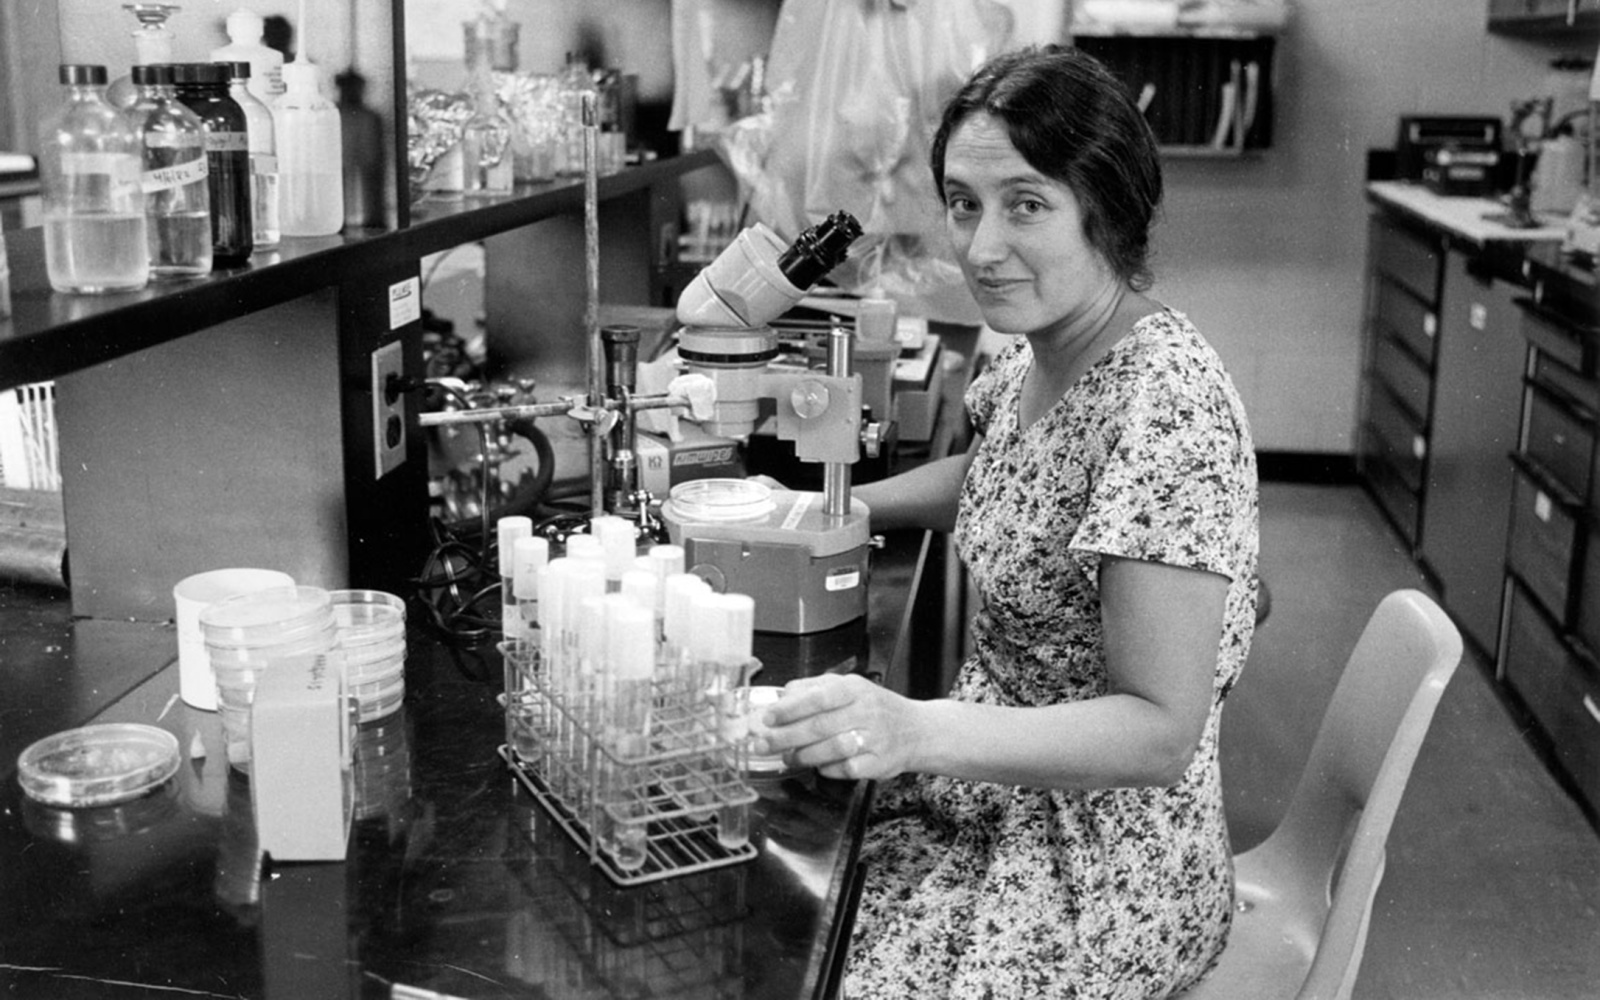 Die junge Lynn Margulis sitzt in einem Labor mit zahlreichen Laborutensilien. Sie trägt ein Sommerkleid und lächelt leicht.